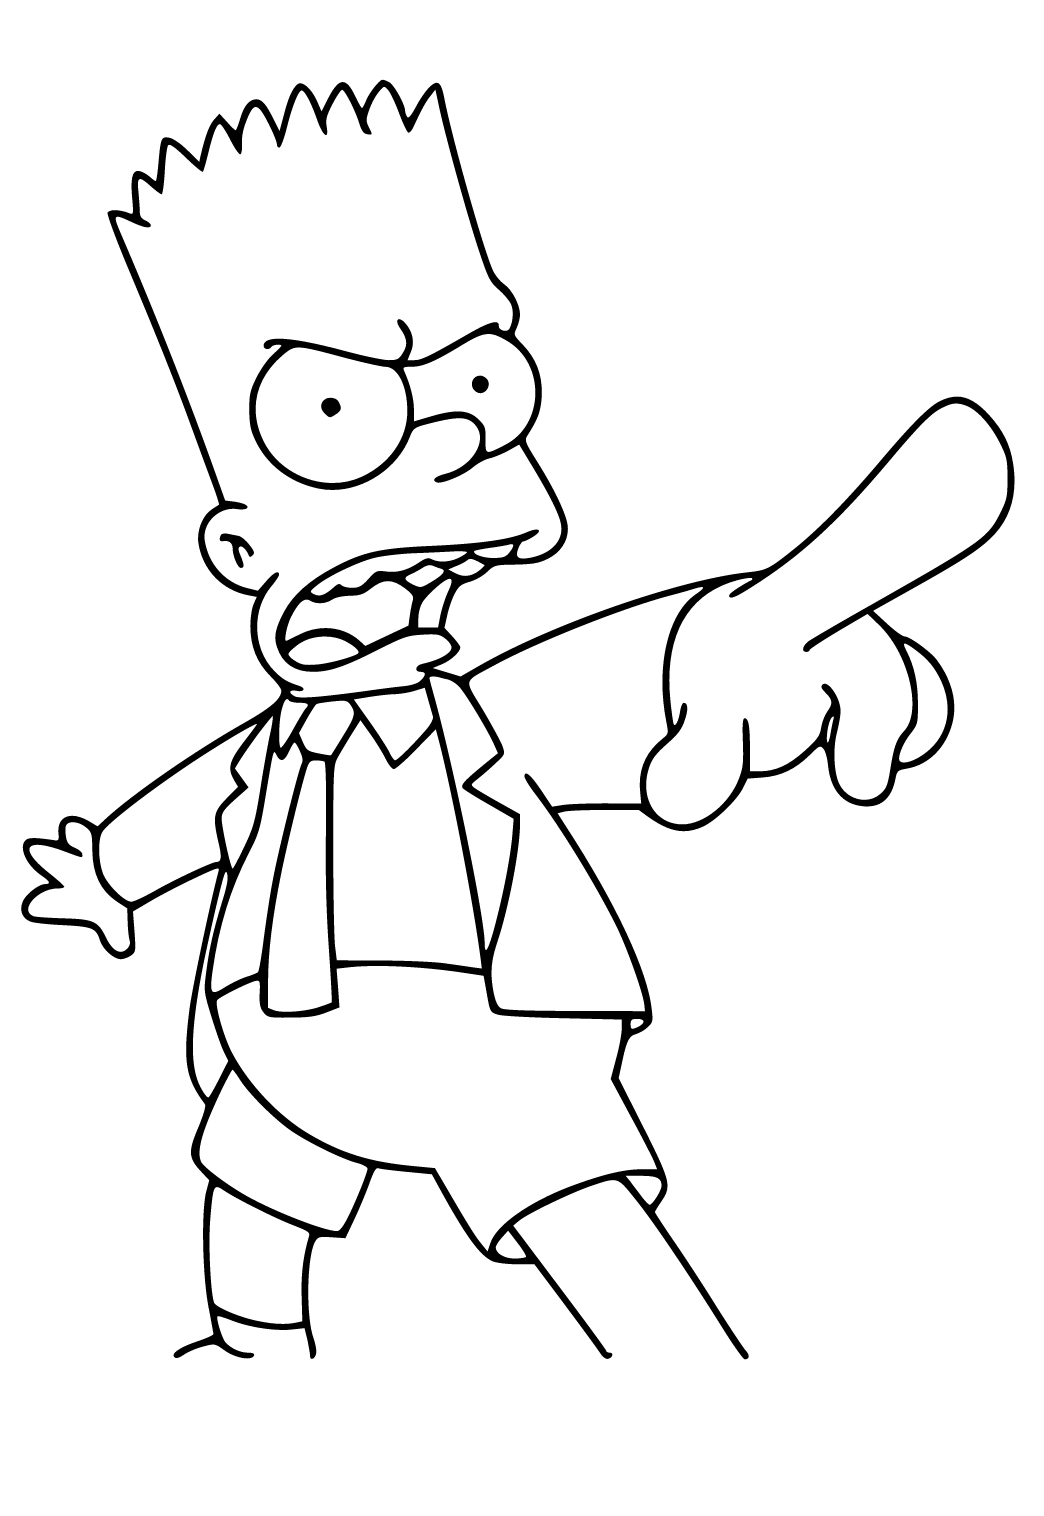 COMO DESENHAR BART SIMPSONS - PASSO A PASSO ( Fácil e Rápido ) how to draw  Bart Simpsons 